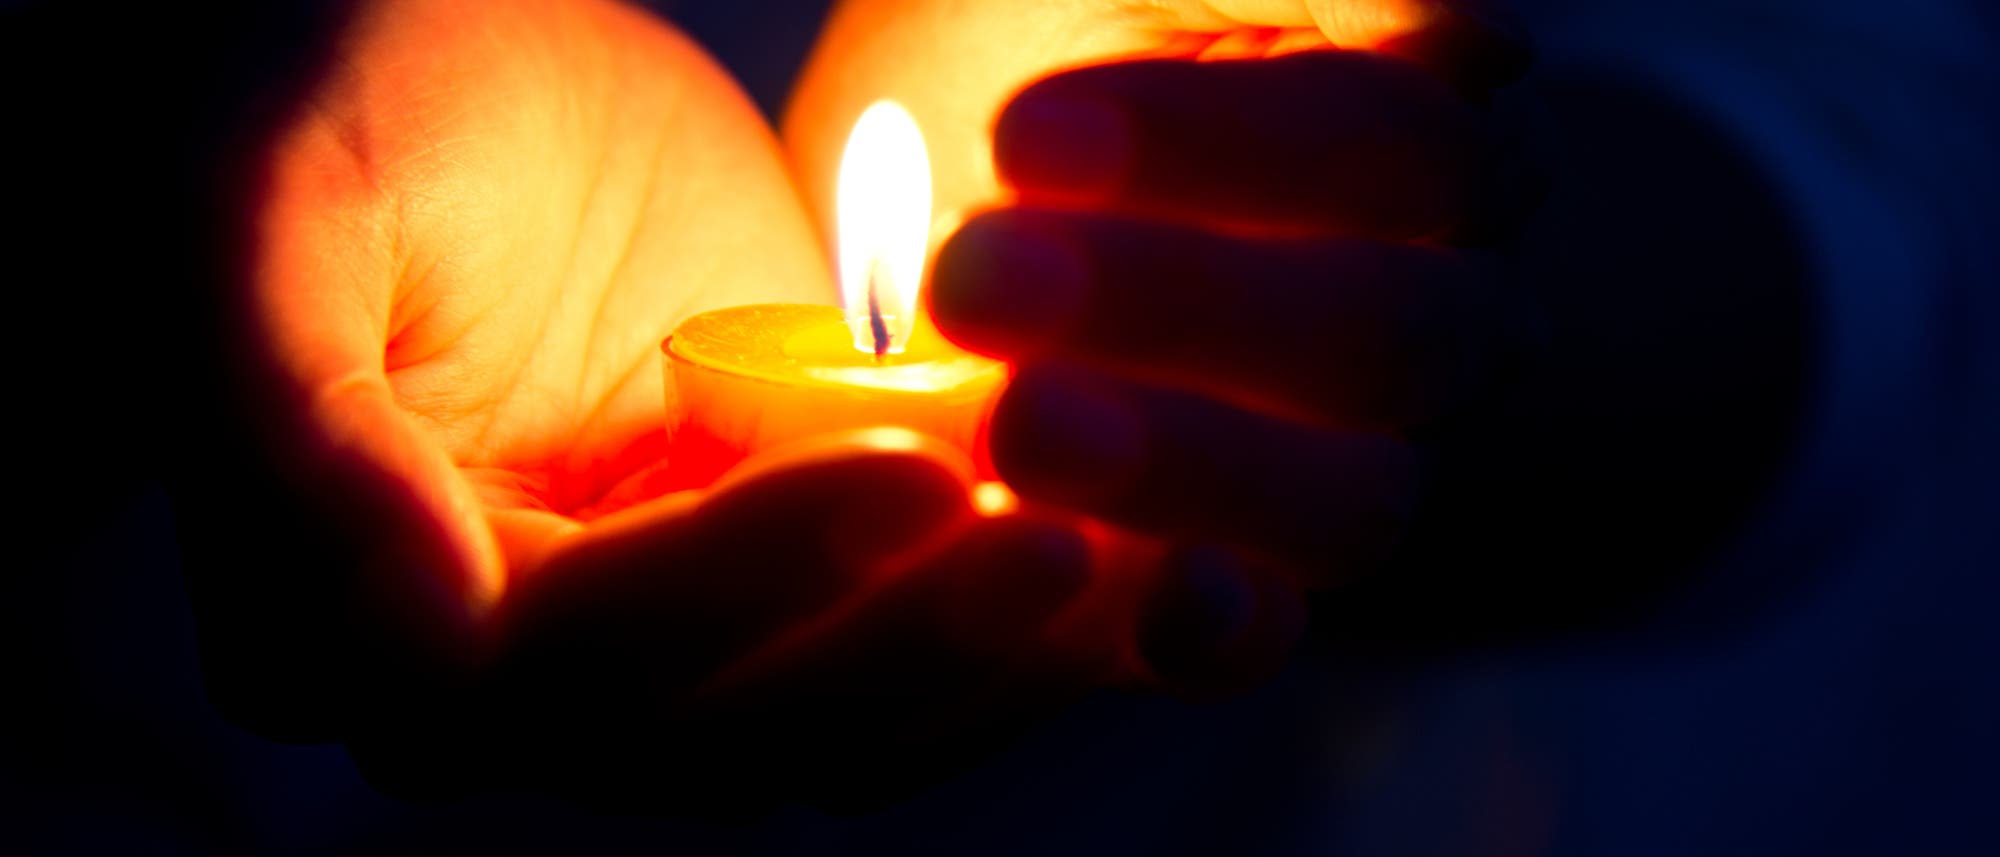 Warme Hände durch Kerzenschein